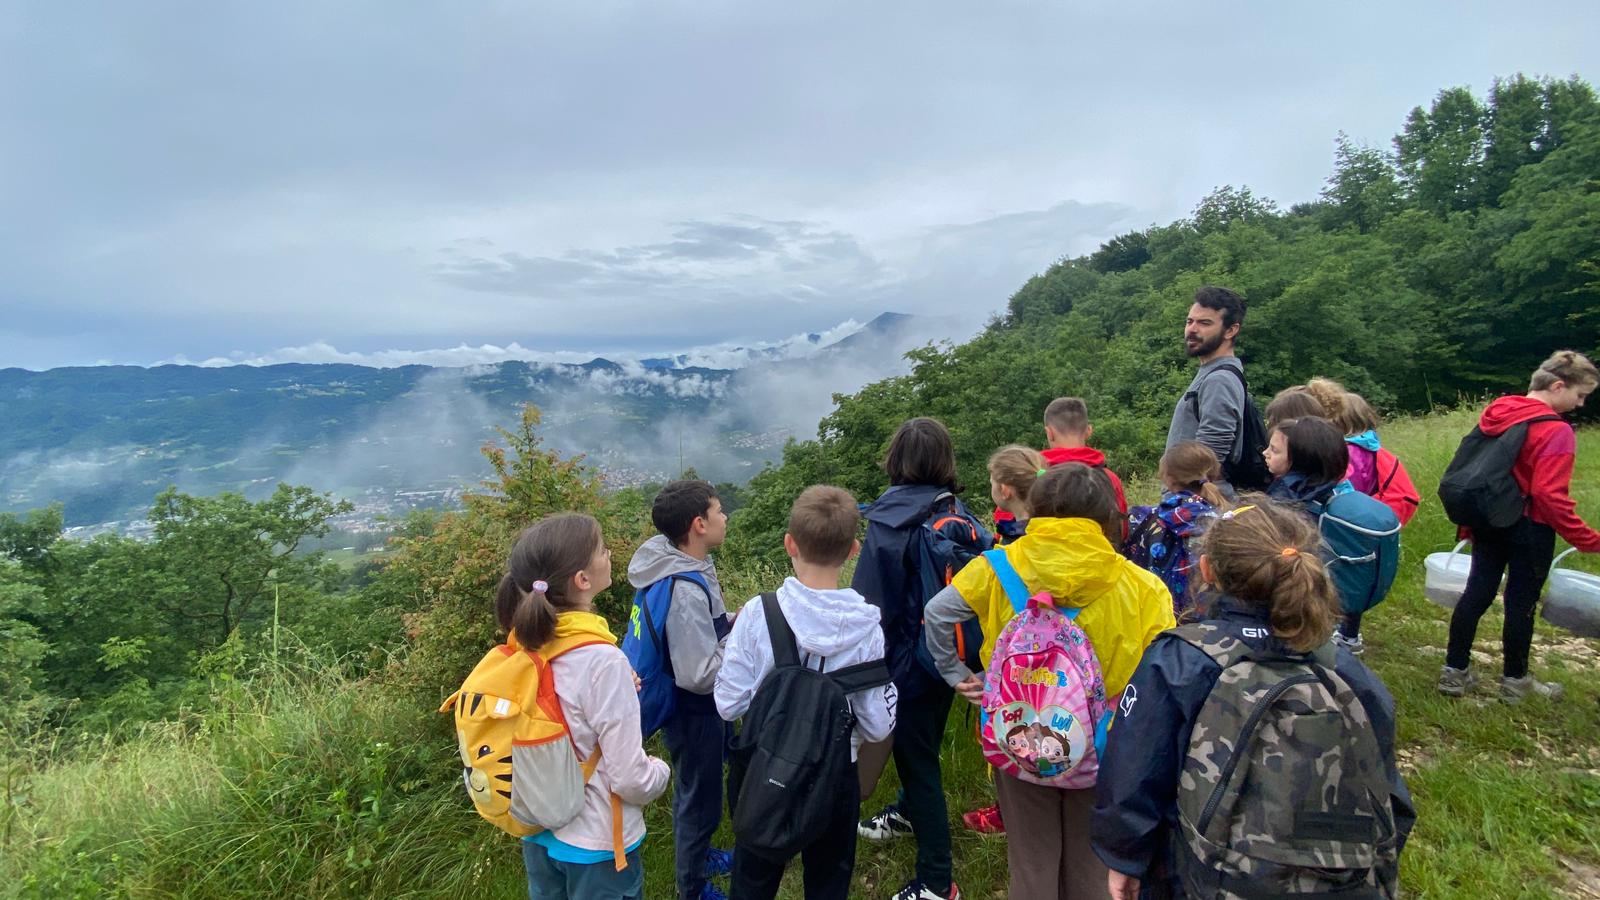 bambini e bambine ammirano il paesaggio delle Piccole Dolomiti in parte coperte dalle nuvole